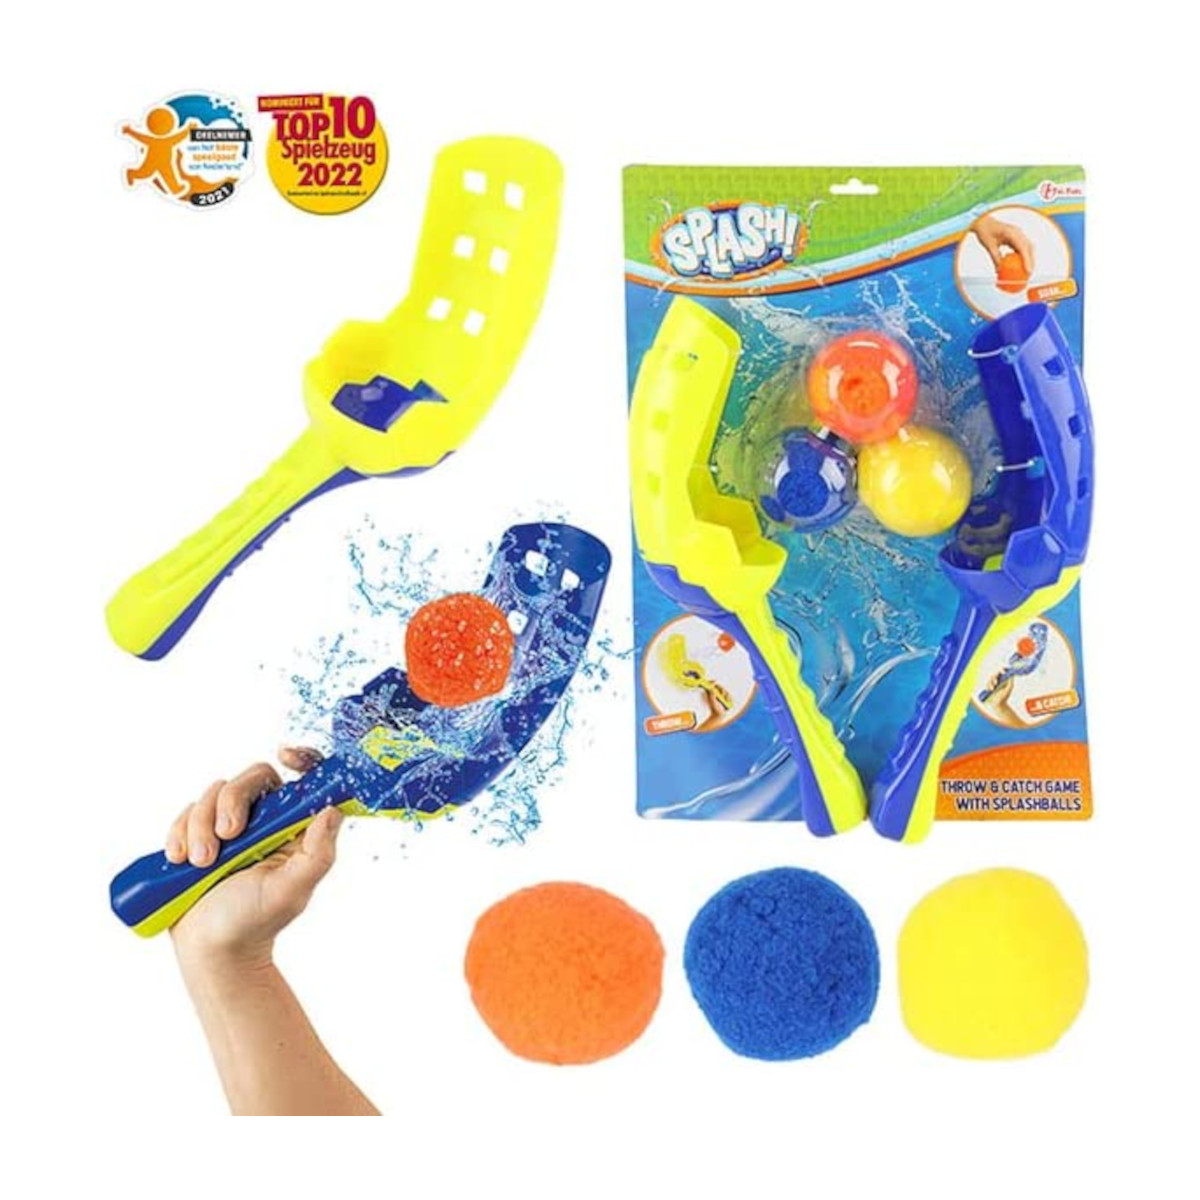 SPLASH Ballfangspiel Wasserspielzeug Wasser TOI-TOYS